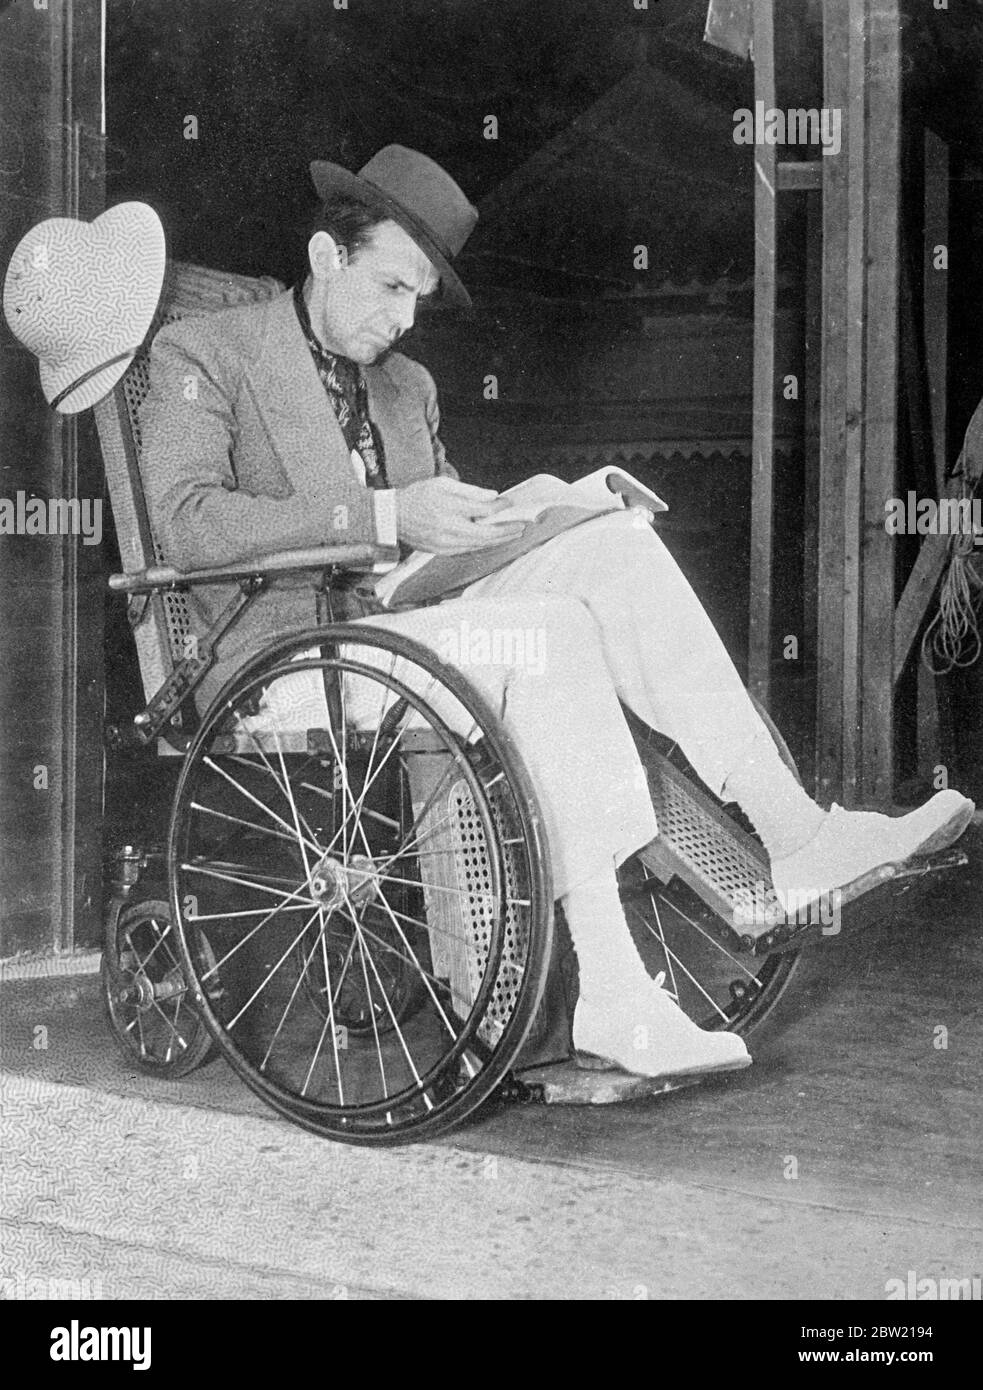 Raymond Massey, el actor británico se está recuperando de los efectos de la flebitis (coágulo de sangre en la pierna) en Hollywood. Para perder el menor tiempo posible, el Sr. Massey se mueve por los estudios Samuel Goldwyn en una silla de ruedas. 25 de agosto de 1937 Foto de stock